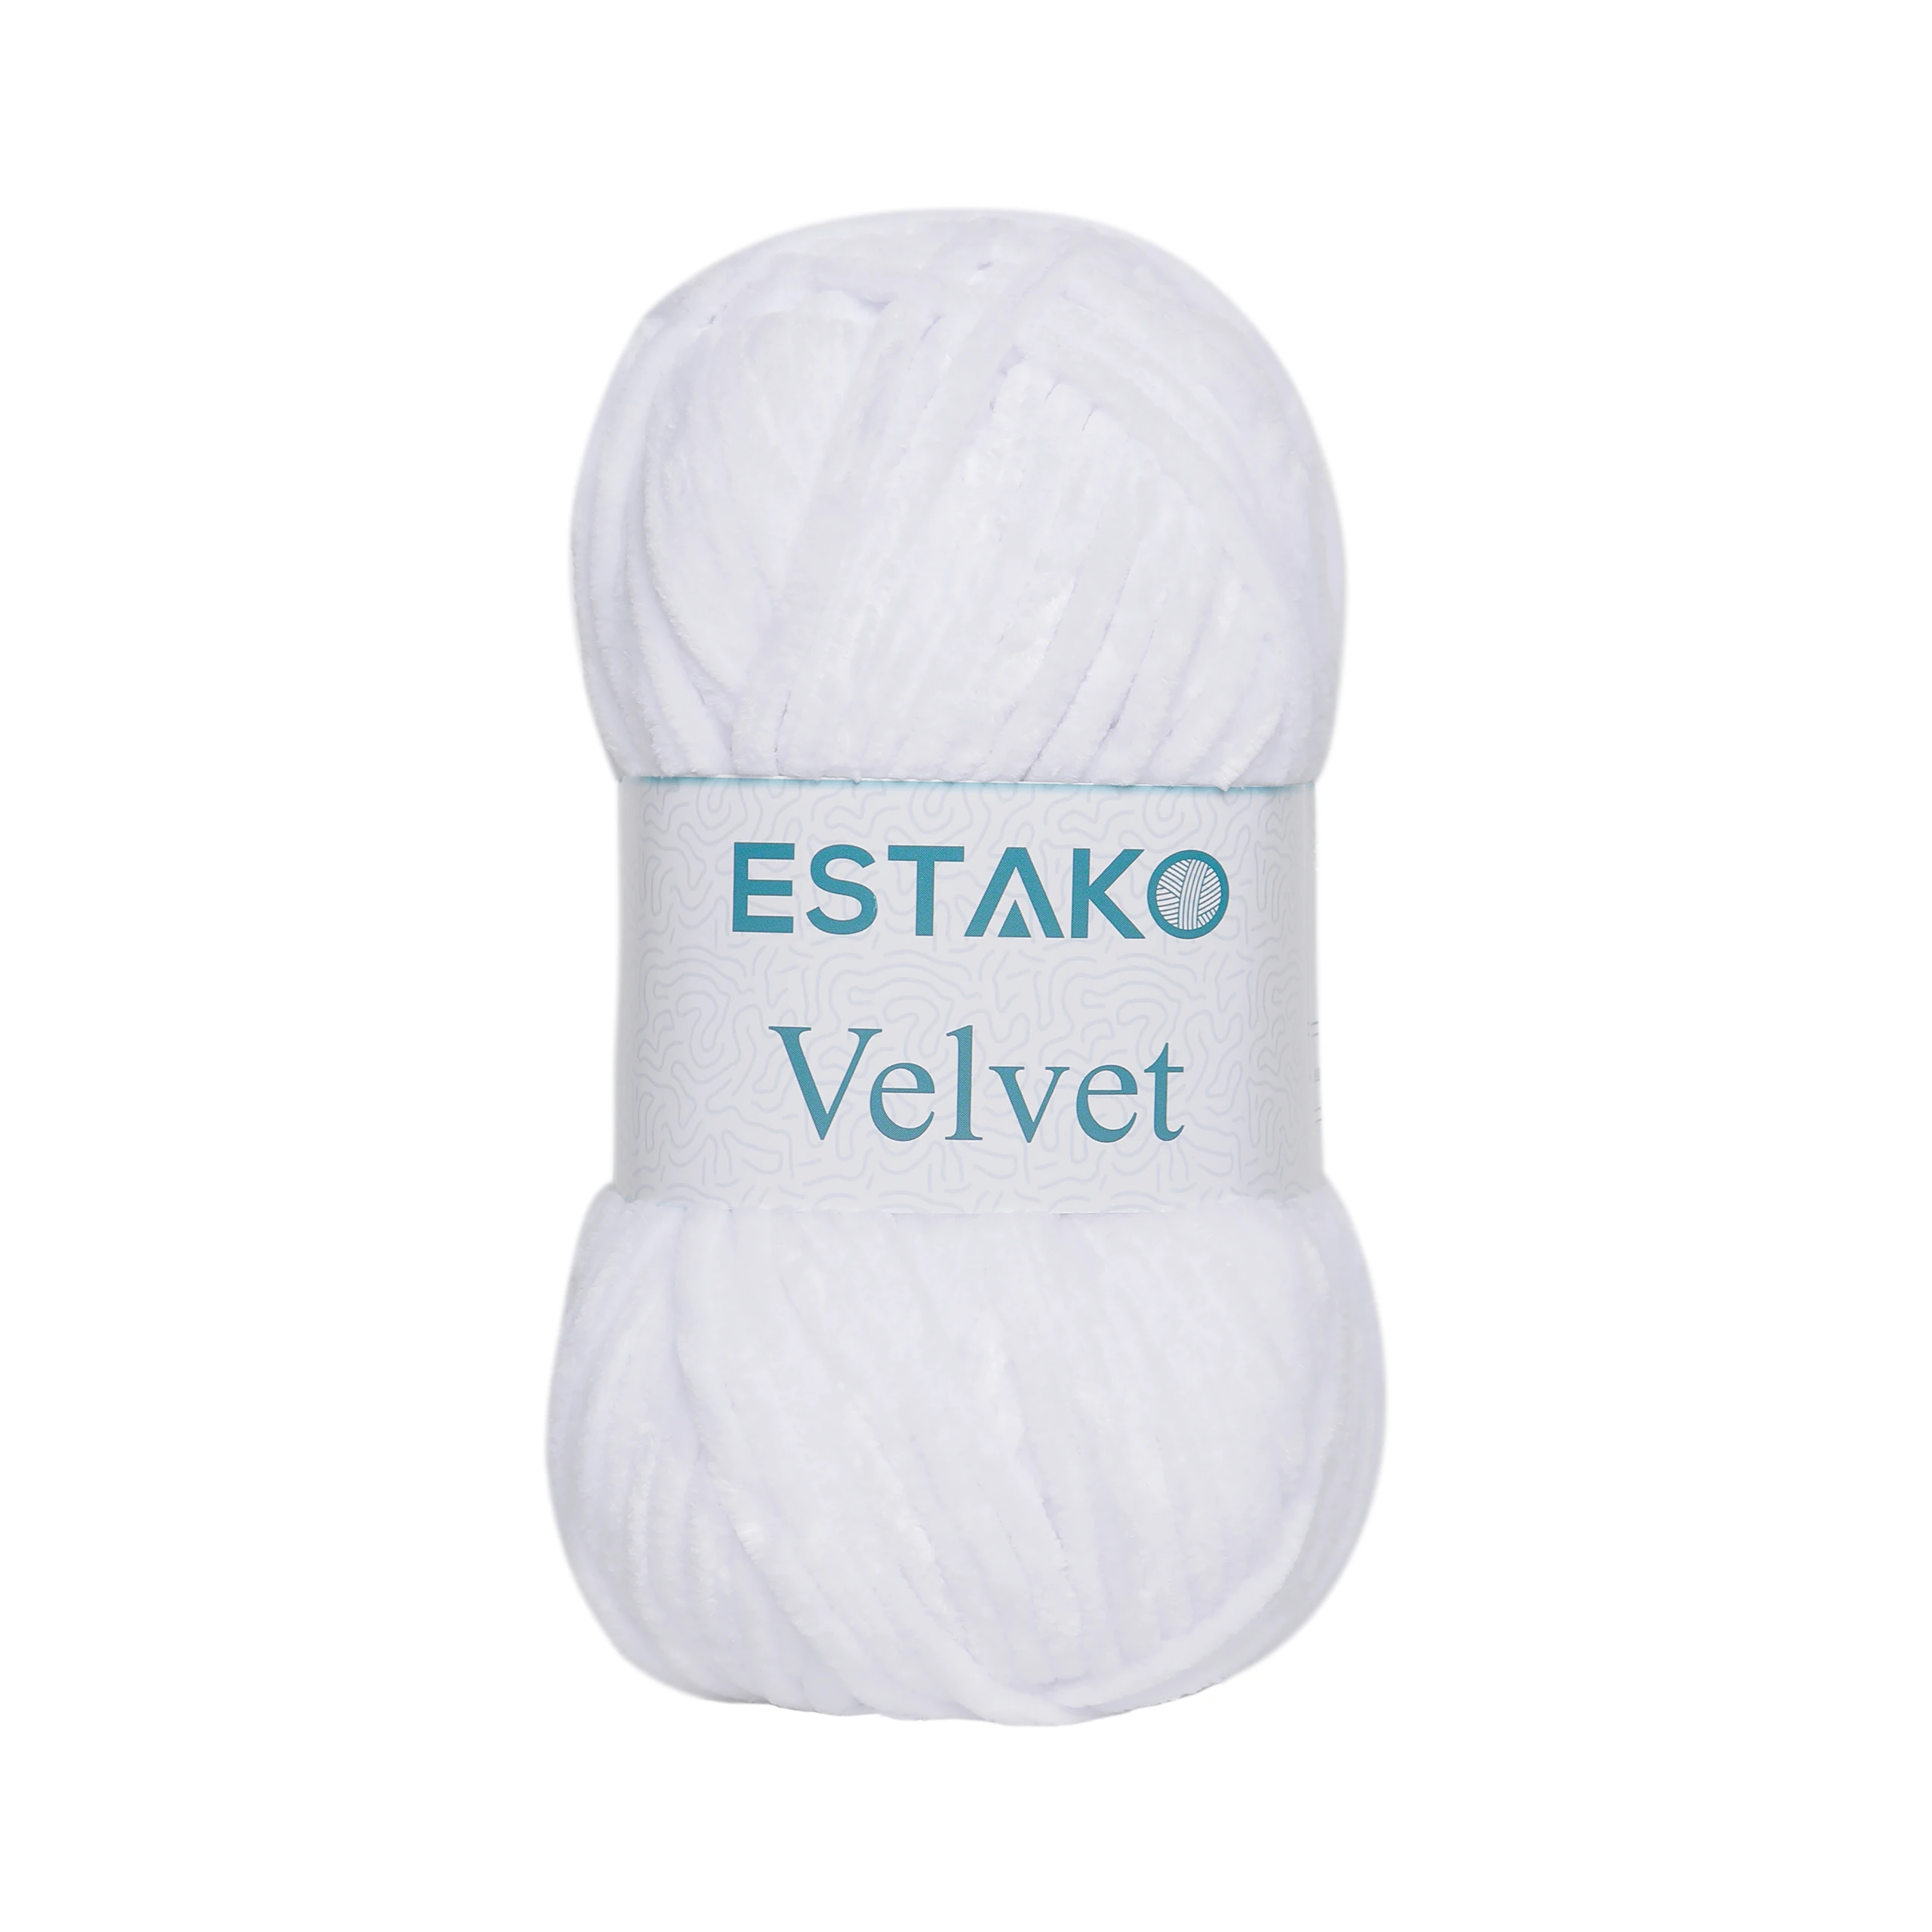 Estako Velvet (3- Skeins Pack) Chenille Blanket amigurumi Yarn for  Crocheting and Knitting Super Bulky 3x100 gr (3x132 yds) (1850 - Yellow)